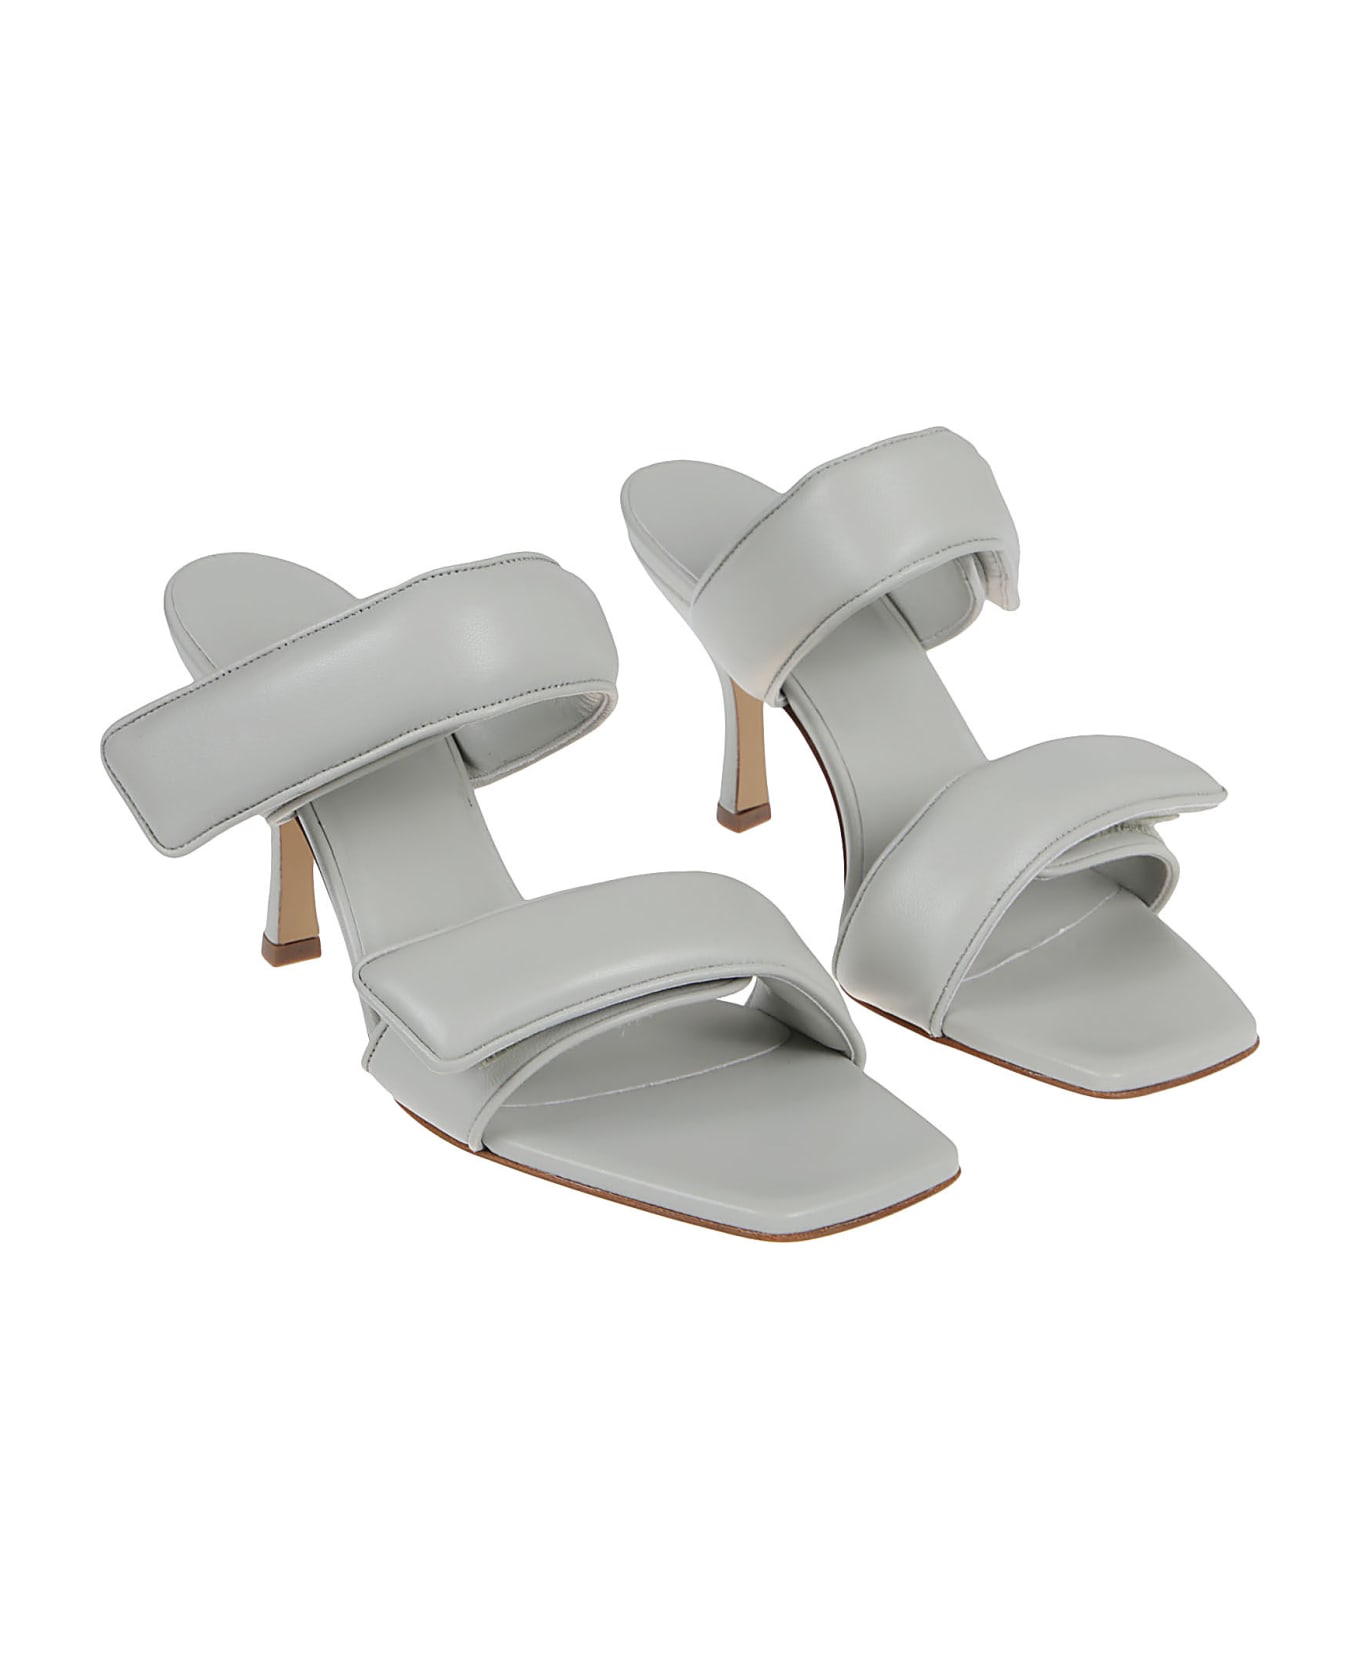 GIA BORGHINI Two Strap Sandals Gia X Pernille Teisbaek - Stone Gray サンダル